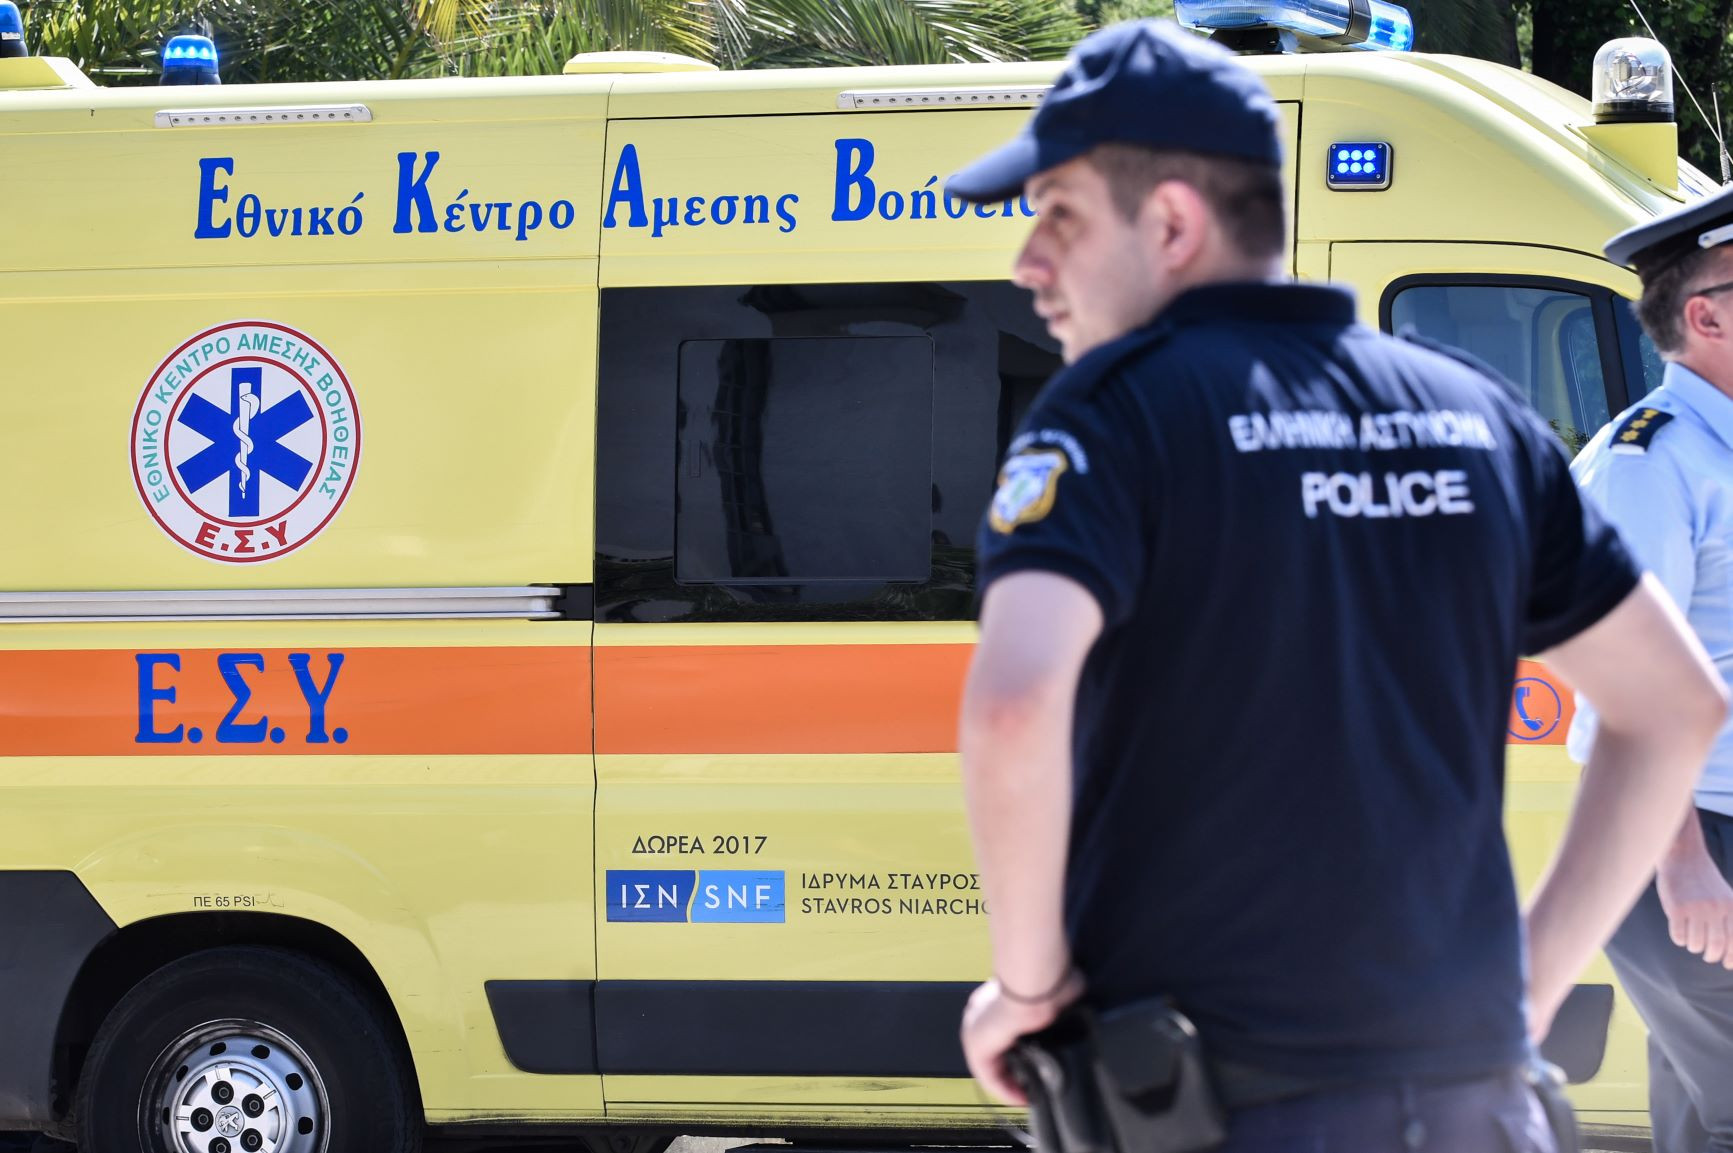 Καμένο πτώμα γυναίκας βρέθηκε σε πρασιά πολυκατοικίας στη Θεσσαλονίκη